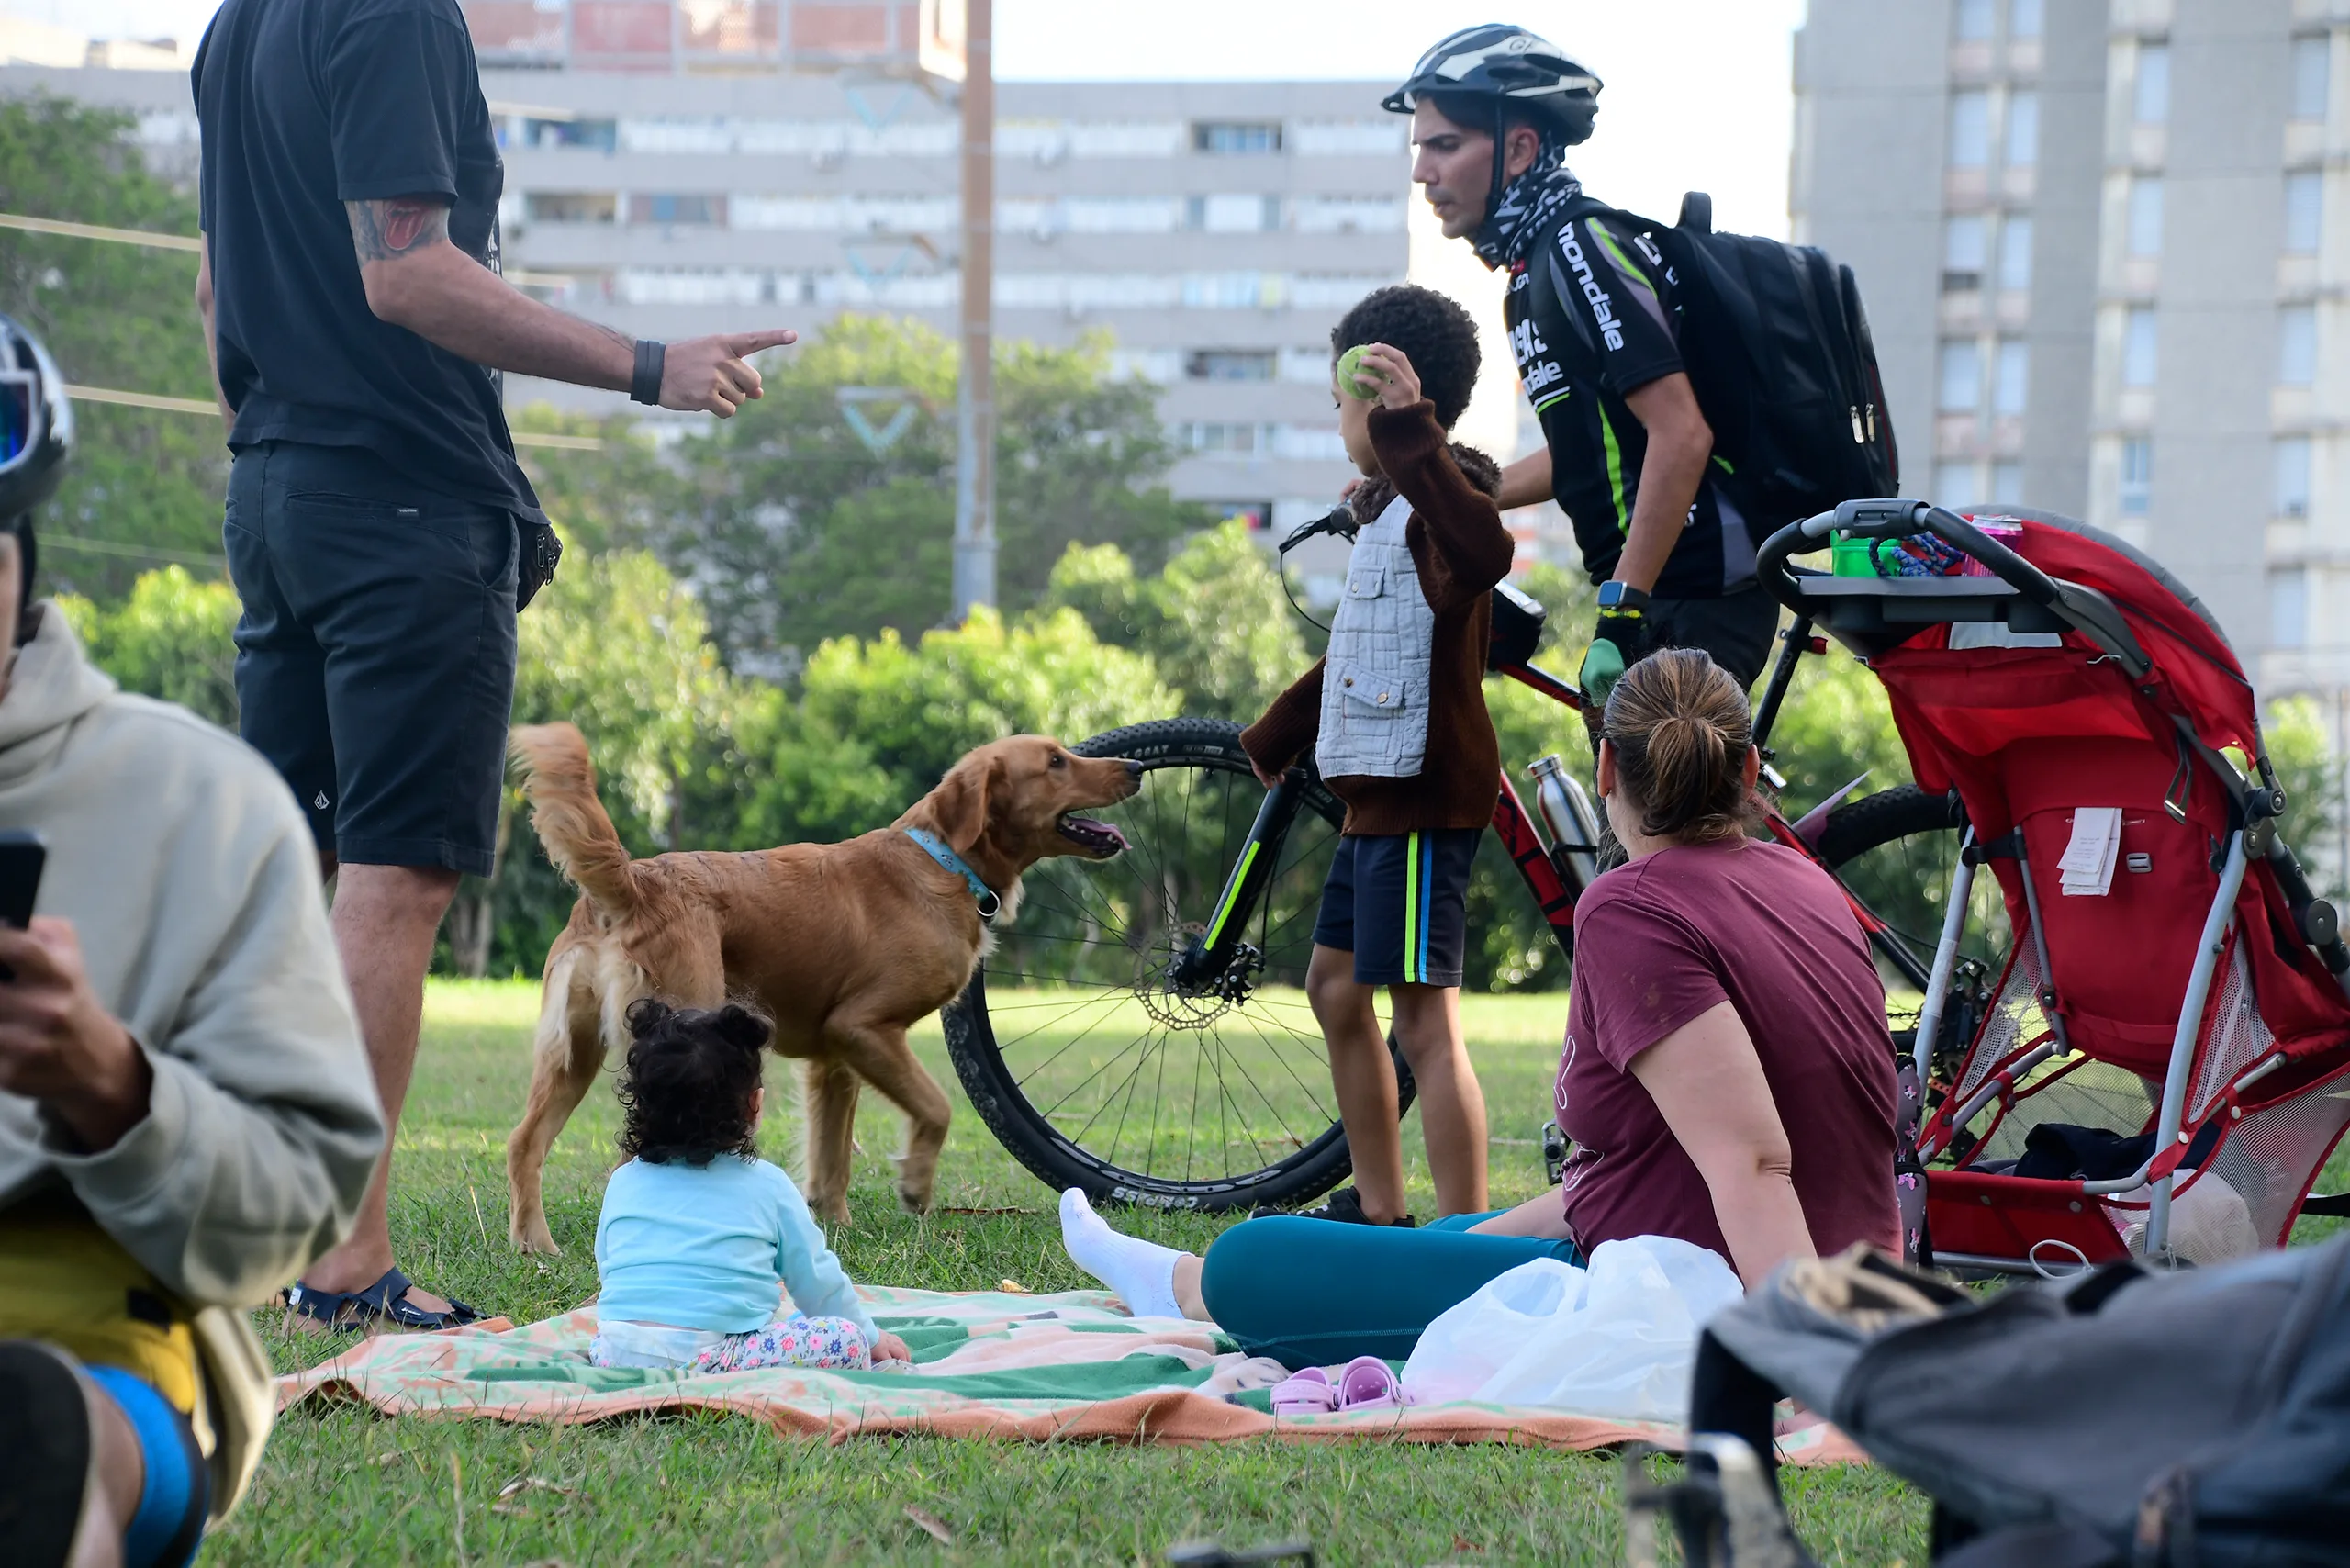 Varias personas hacen un picnic en un espacio urbano lleno d evegetación